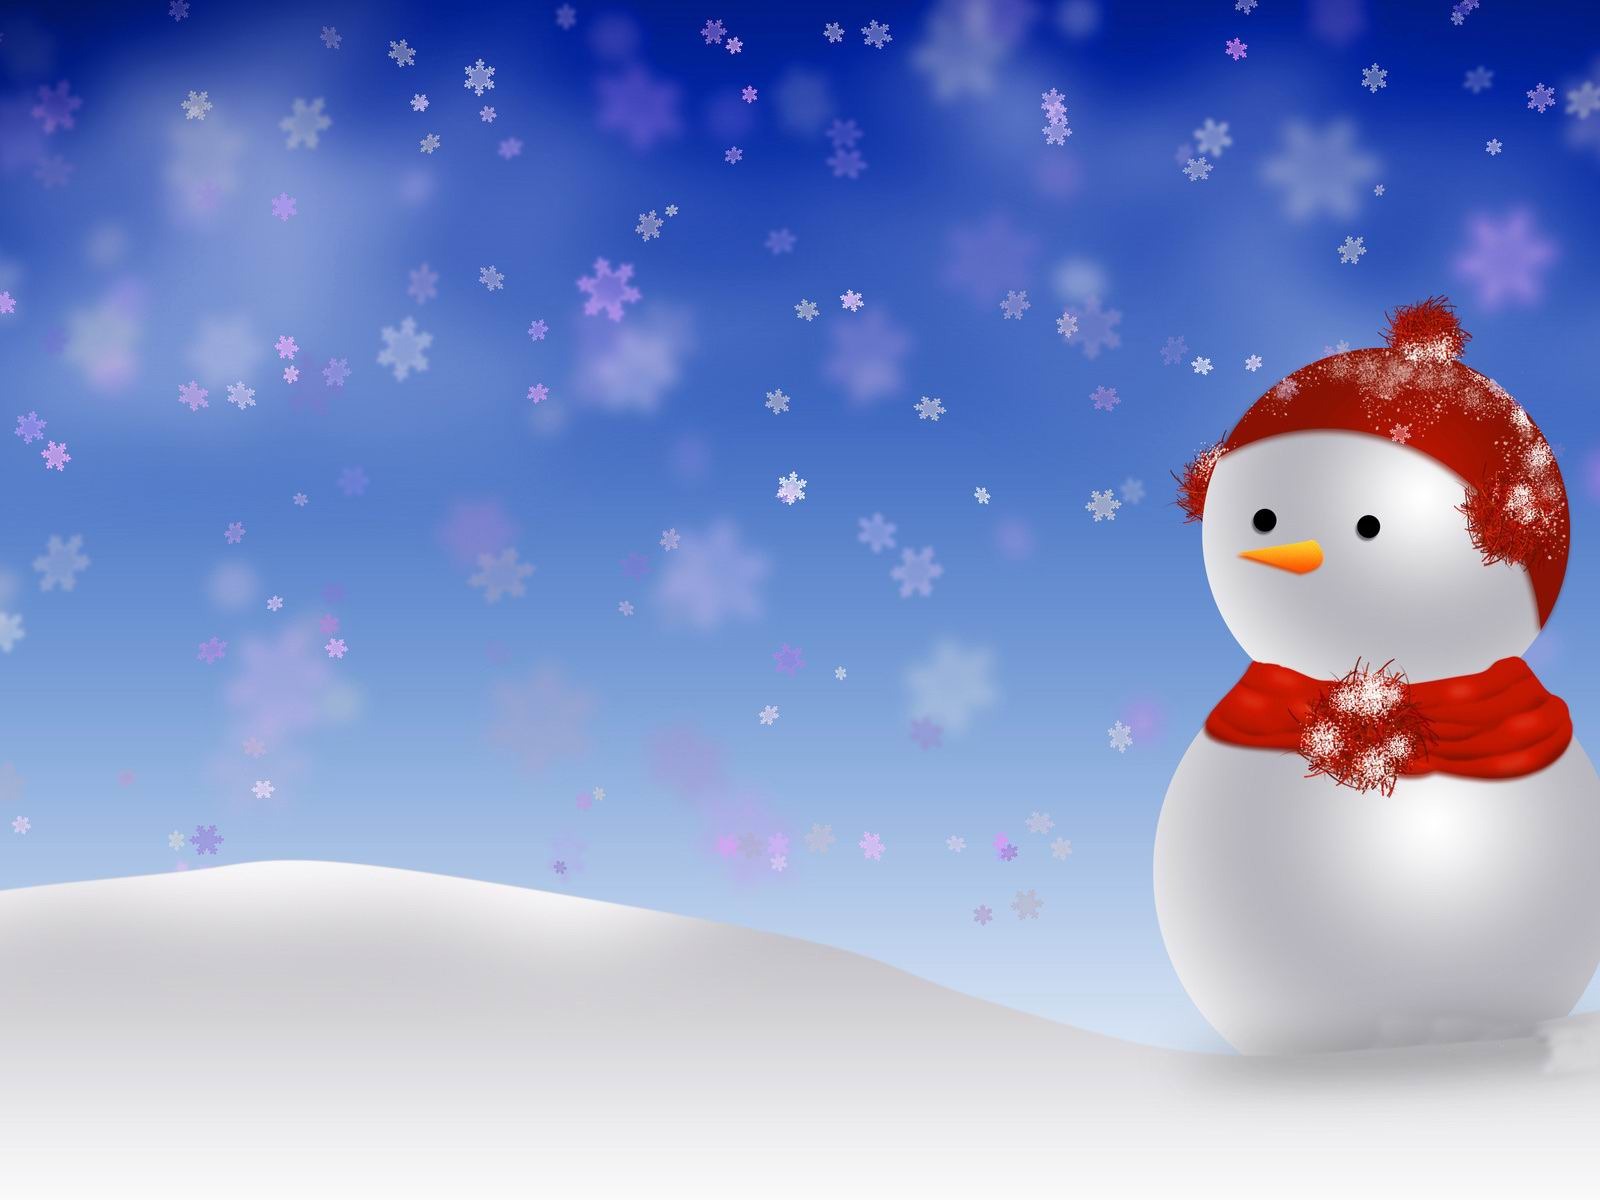 2354 Cute Snowman Widescreen Desktop Wallpaper   WalOpscom